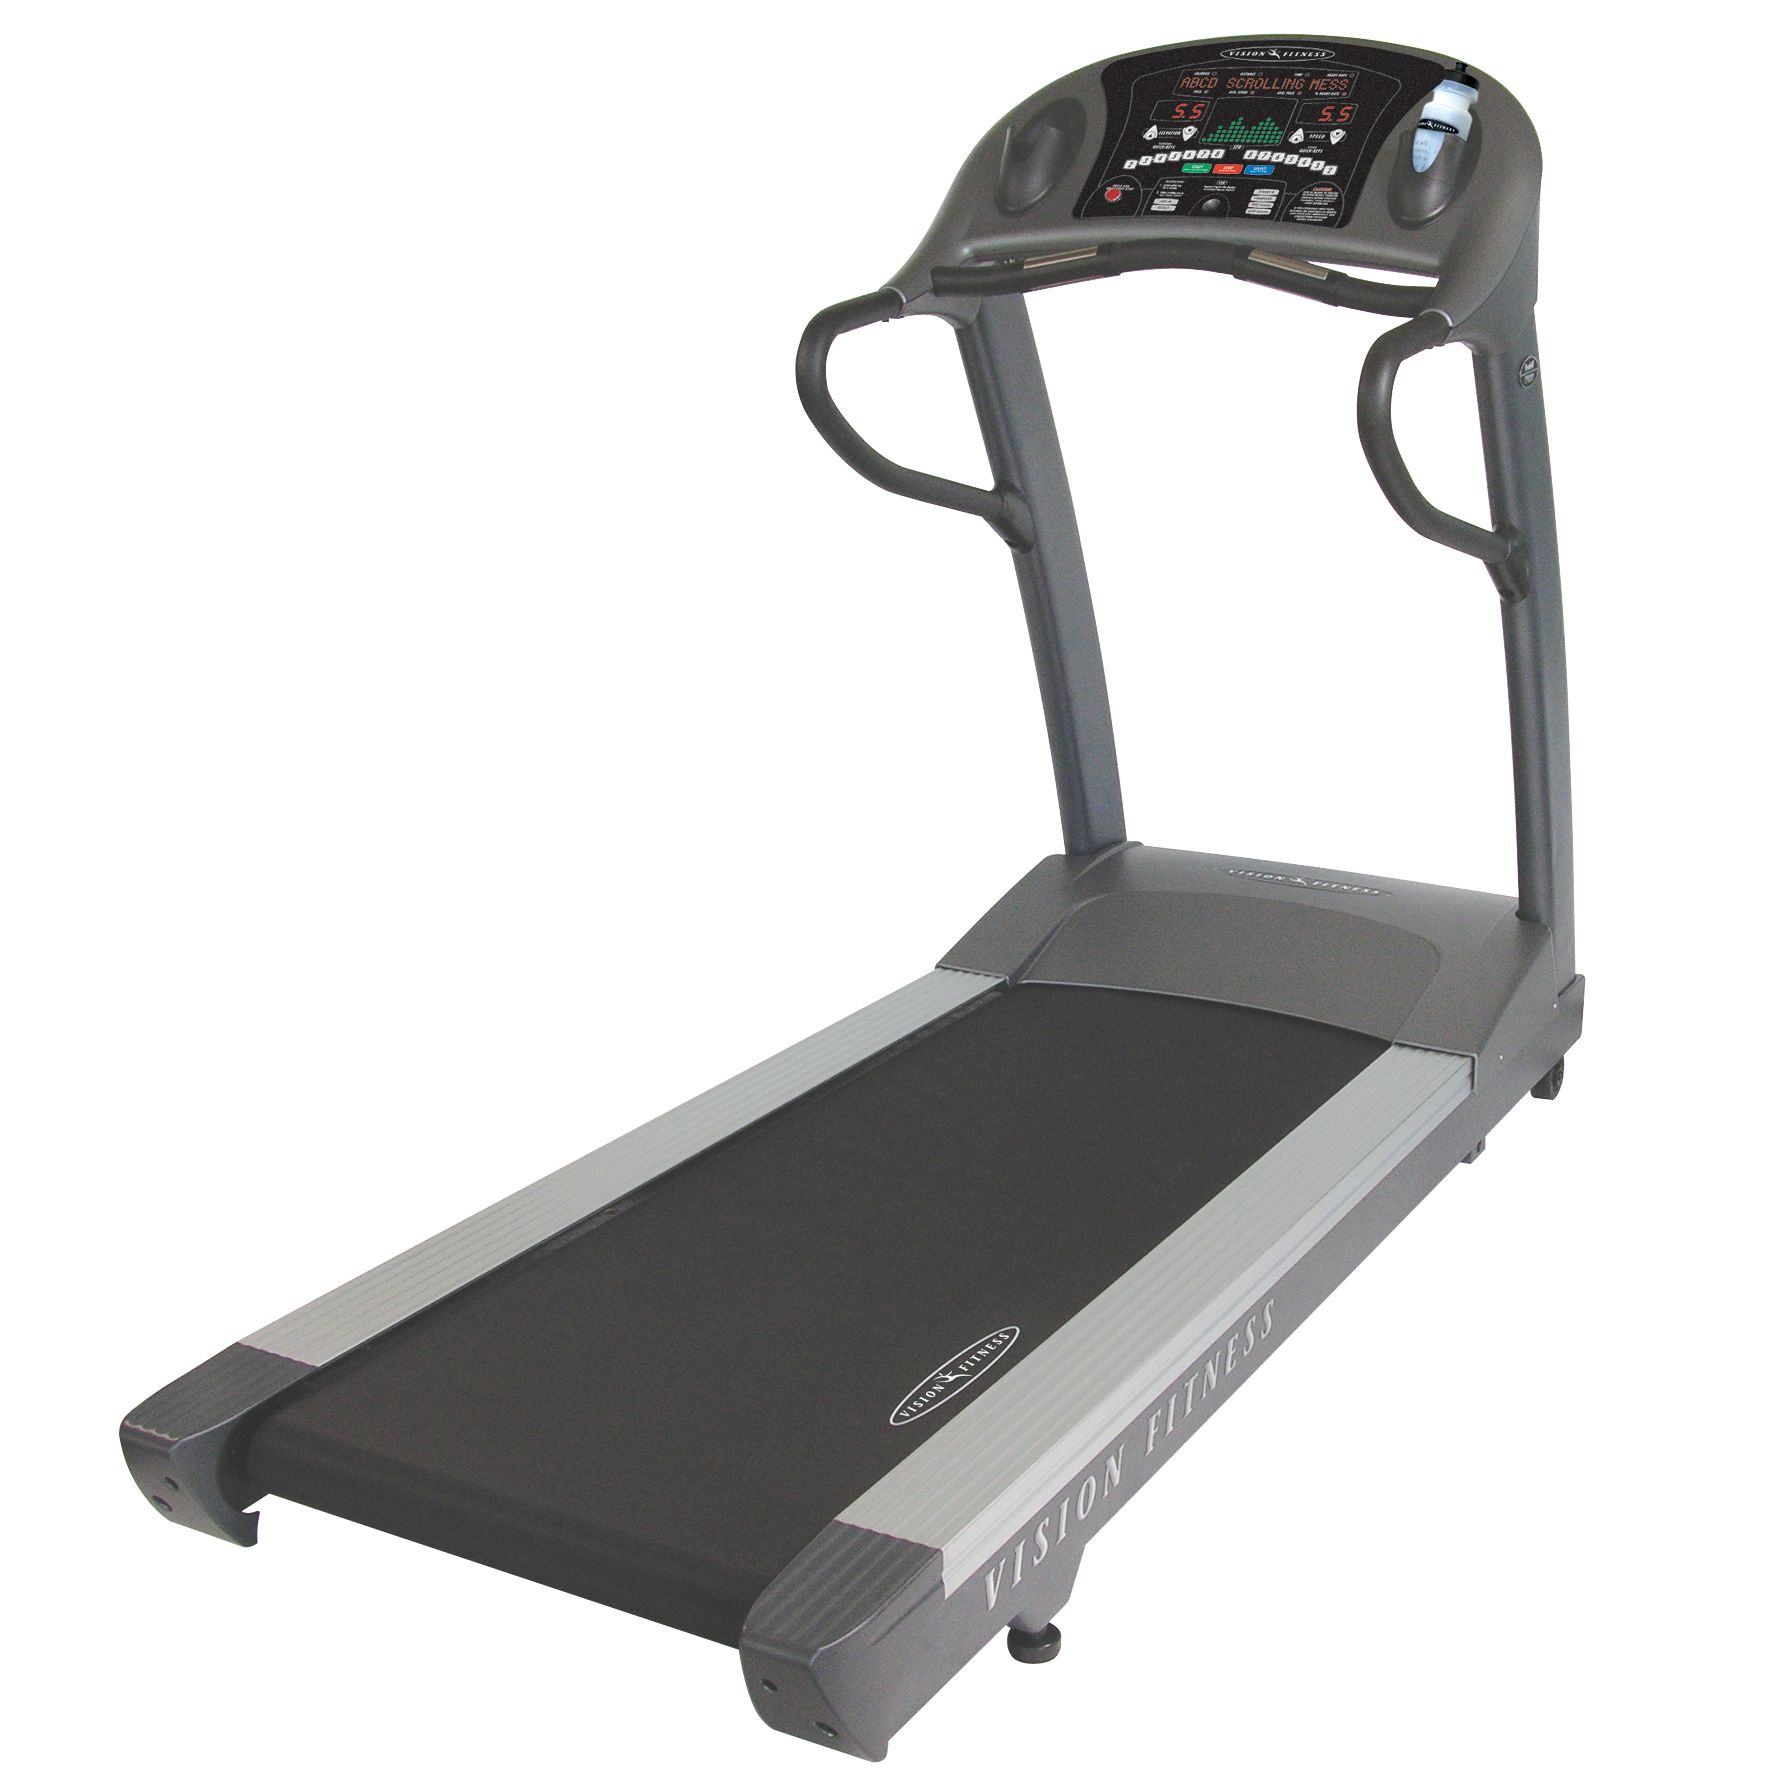 T9800 HRT Treadmill